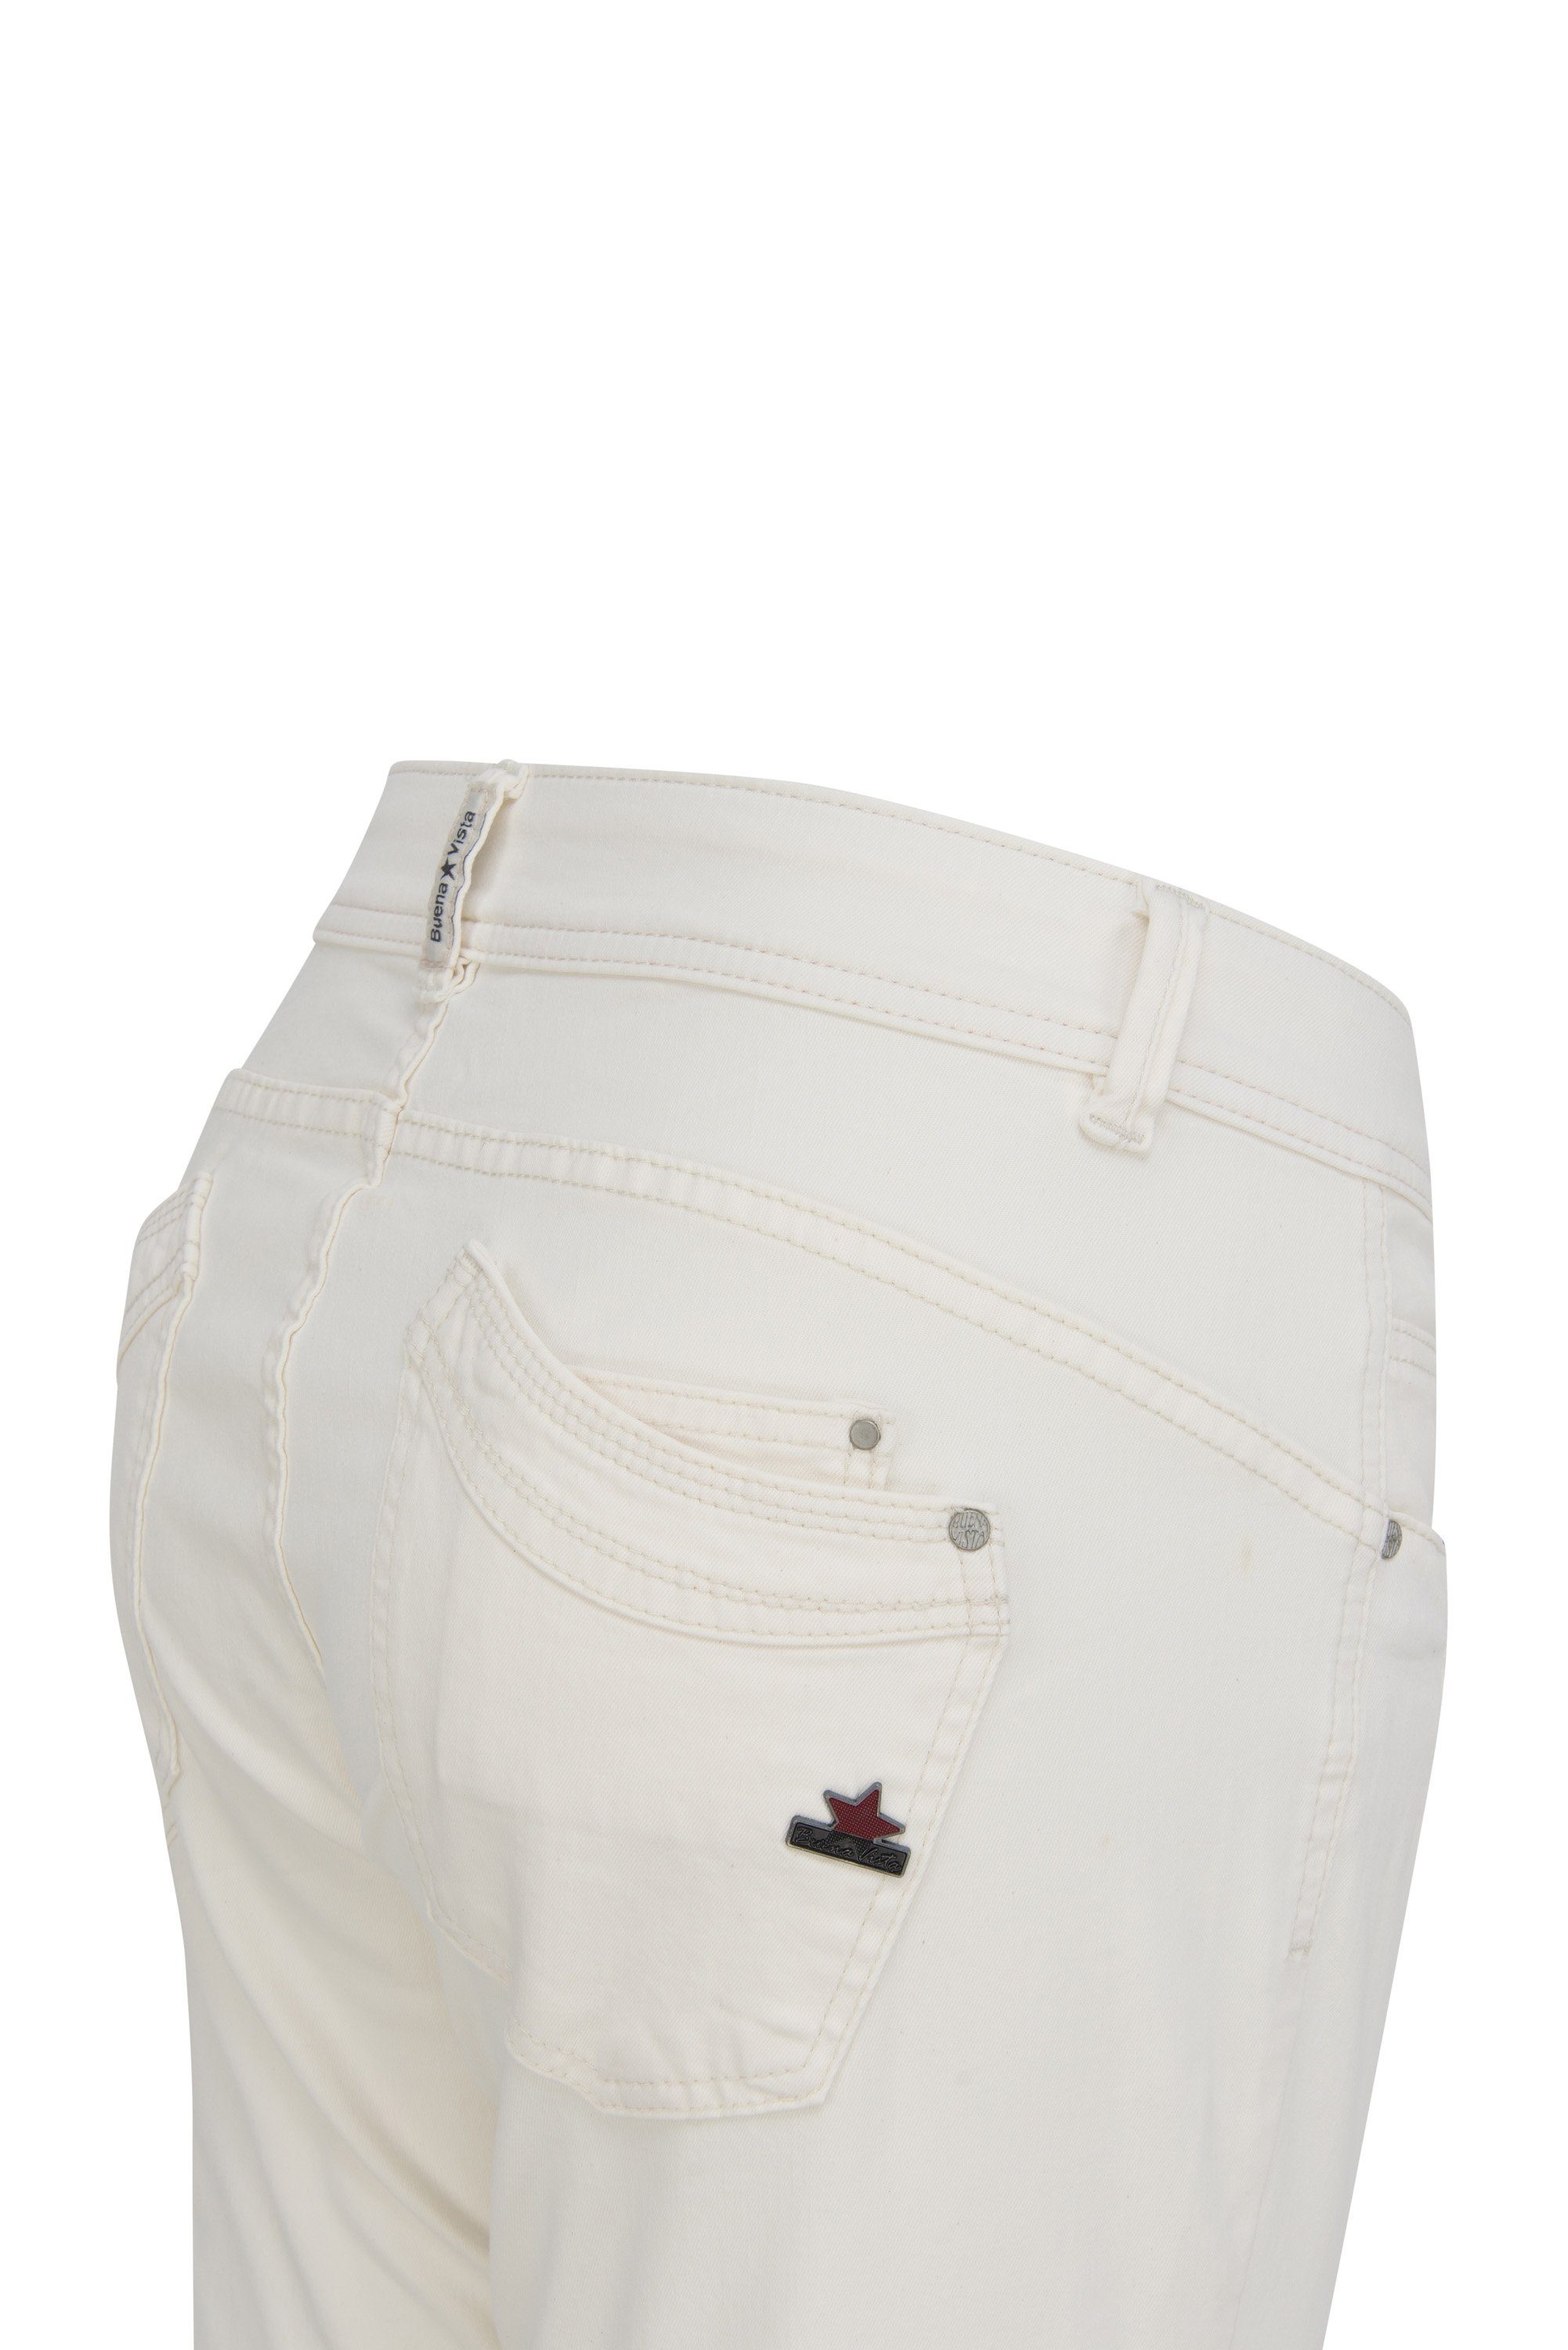 Buena Vista Stretch-Jeans BUENA VISTA 4141.2146 winter white Stretch MALIBU Twill 2109 J5001 